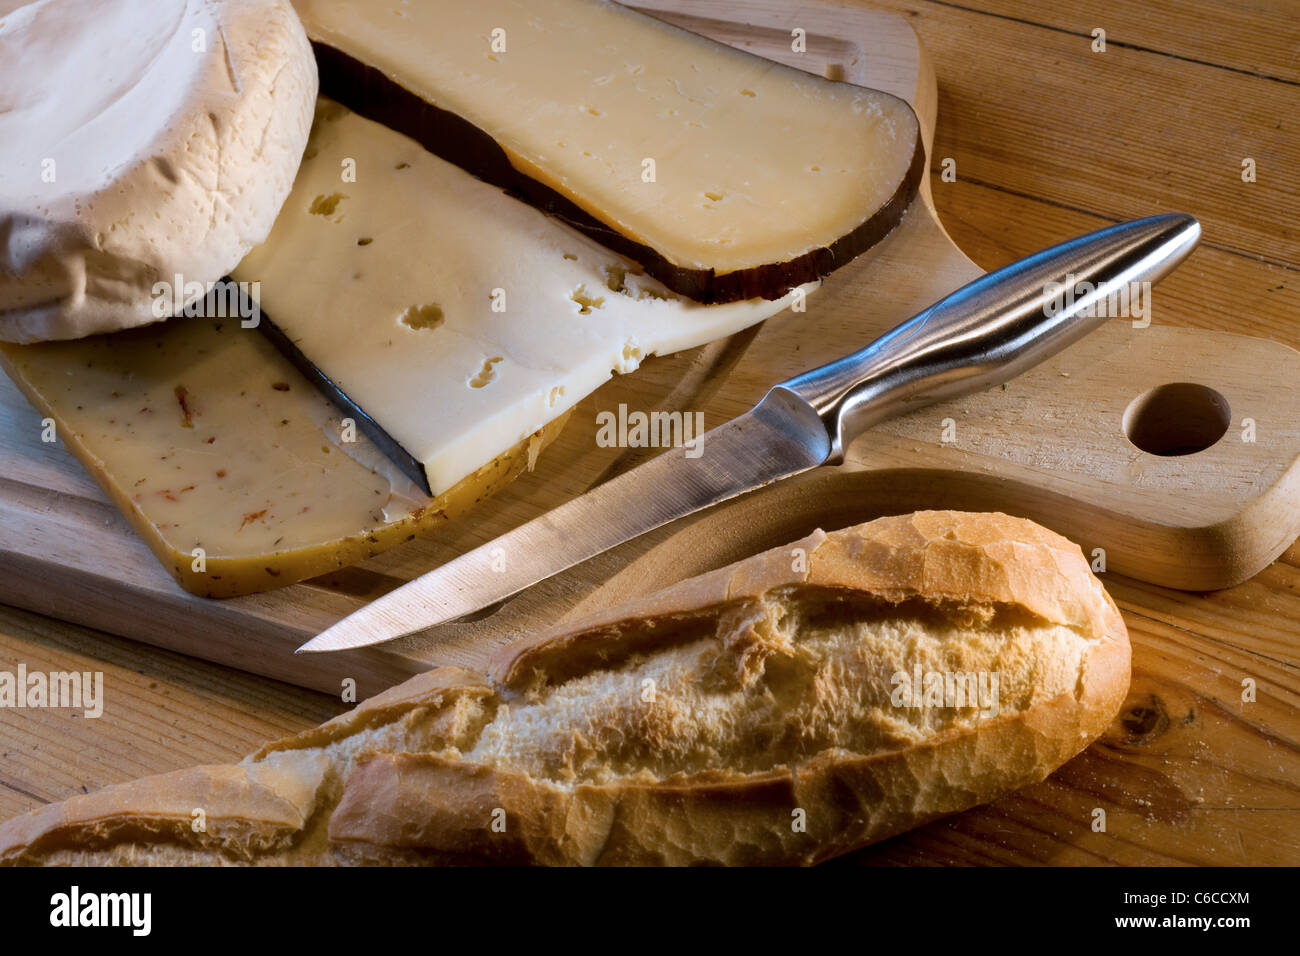 Assortiment de fromages, pain et le couteau en bois sur plateau de fromages Banque D'Images